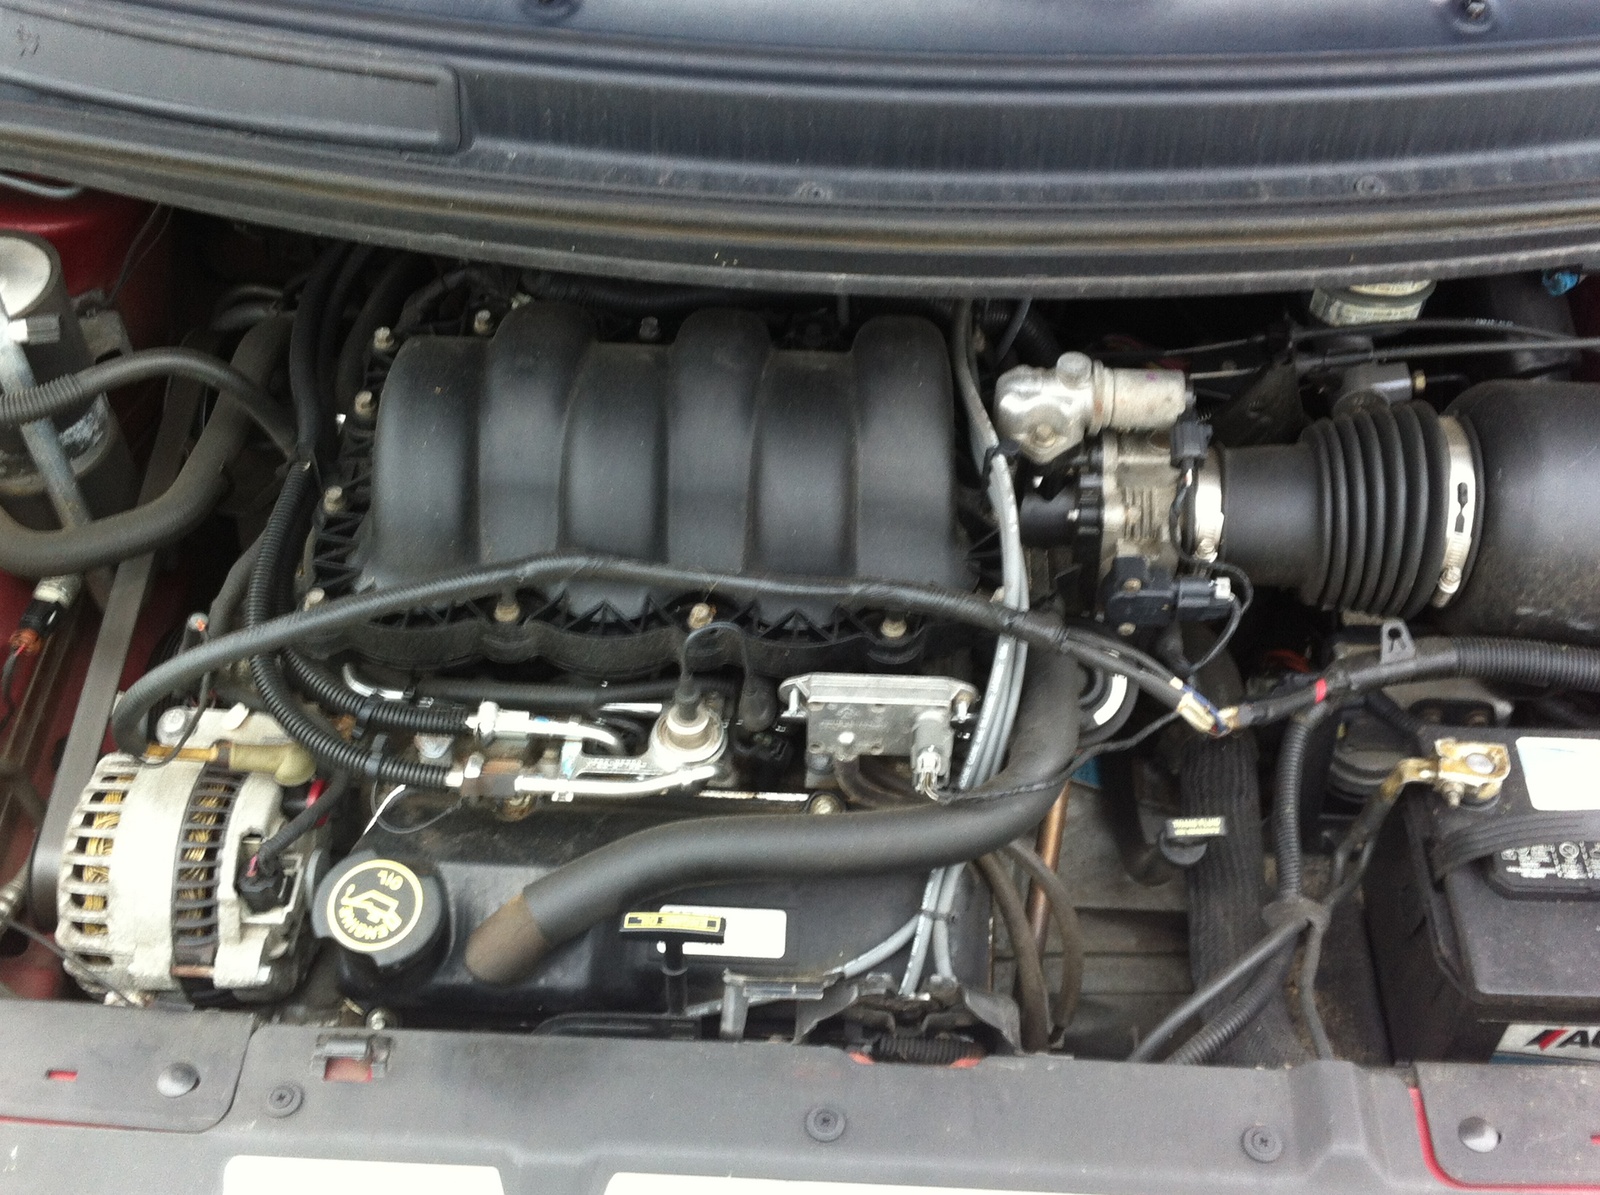 1999 Ford windstar rebuilt engine #3